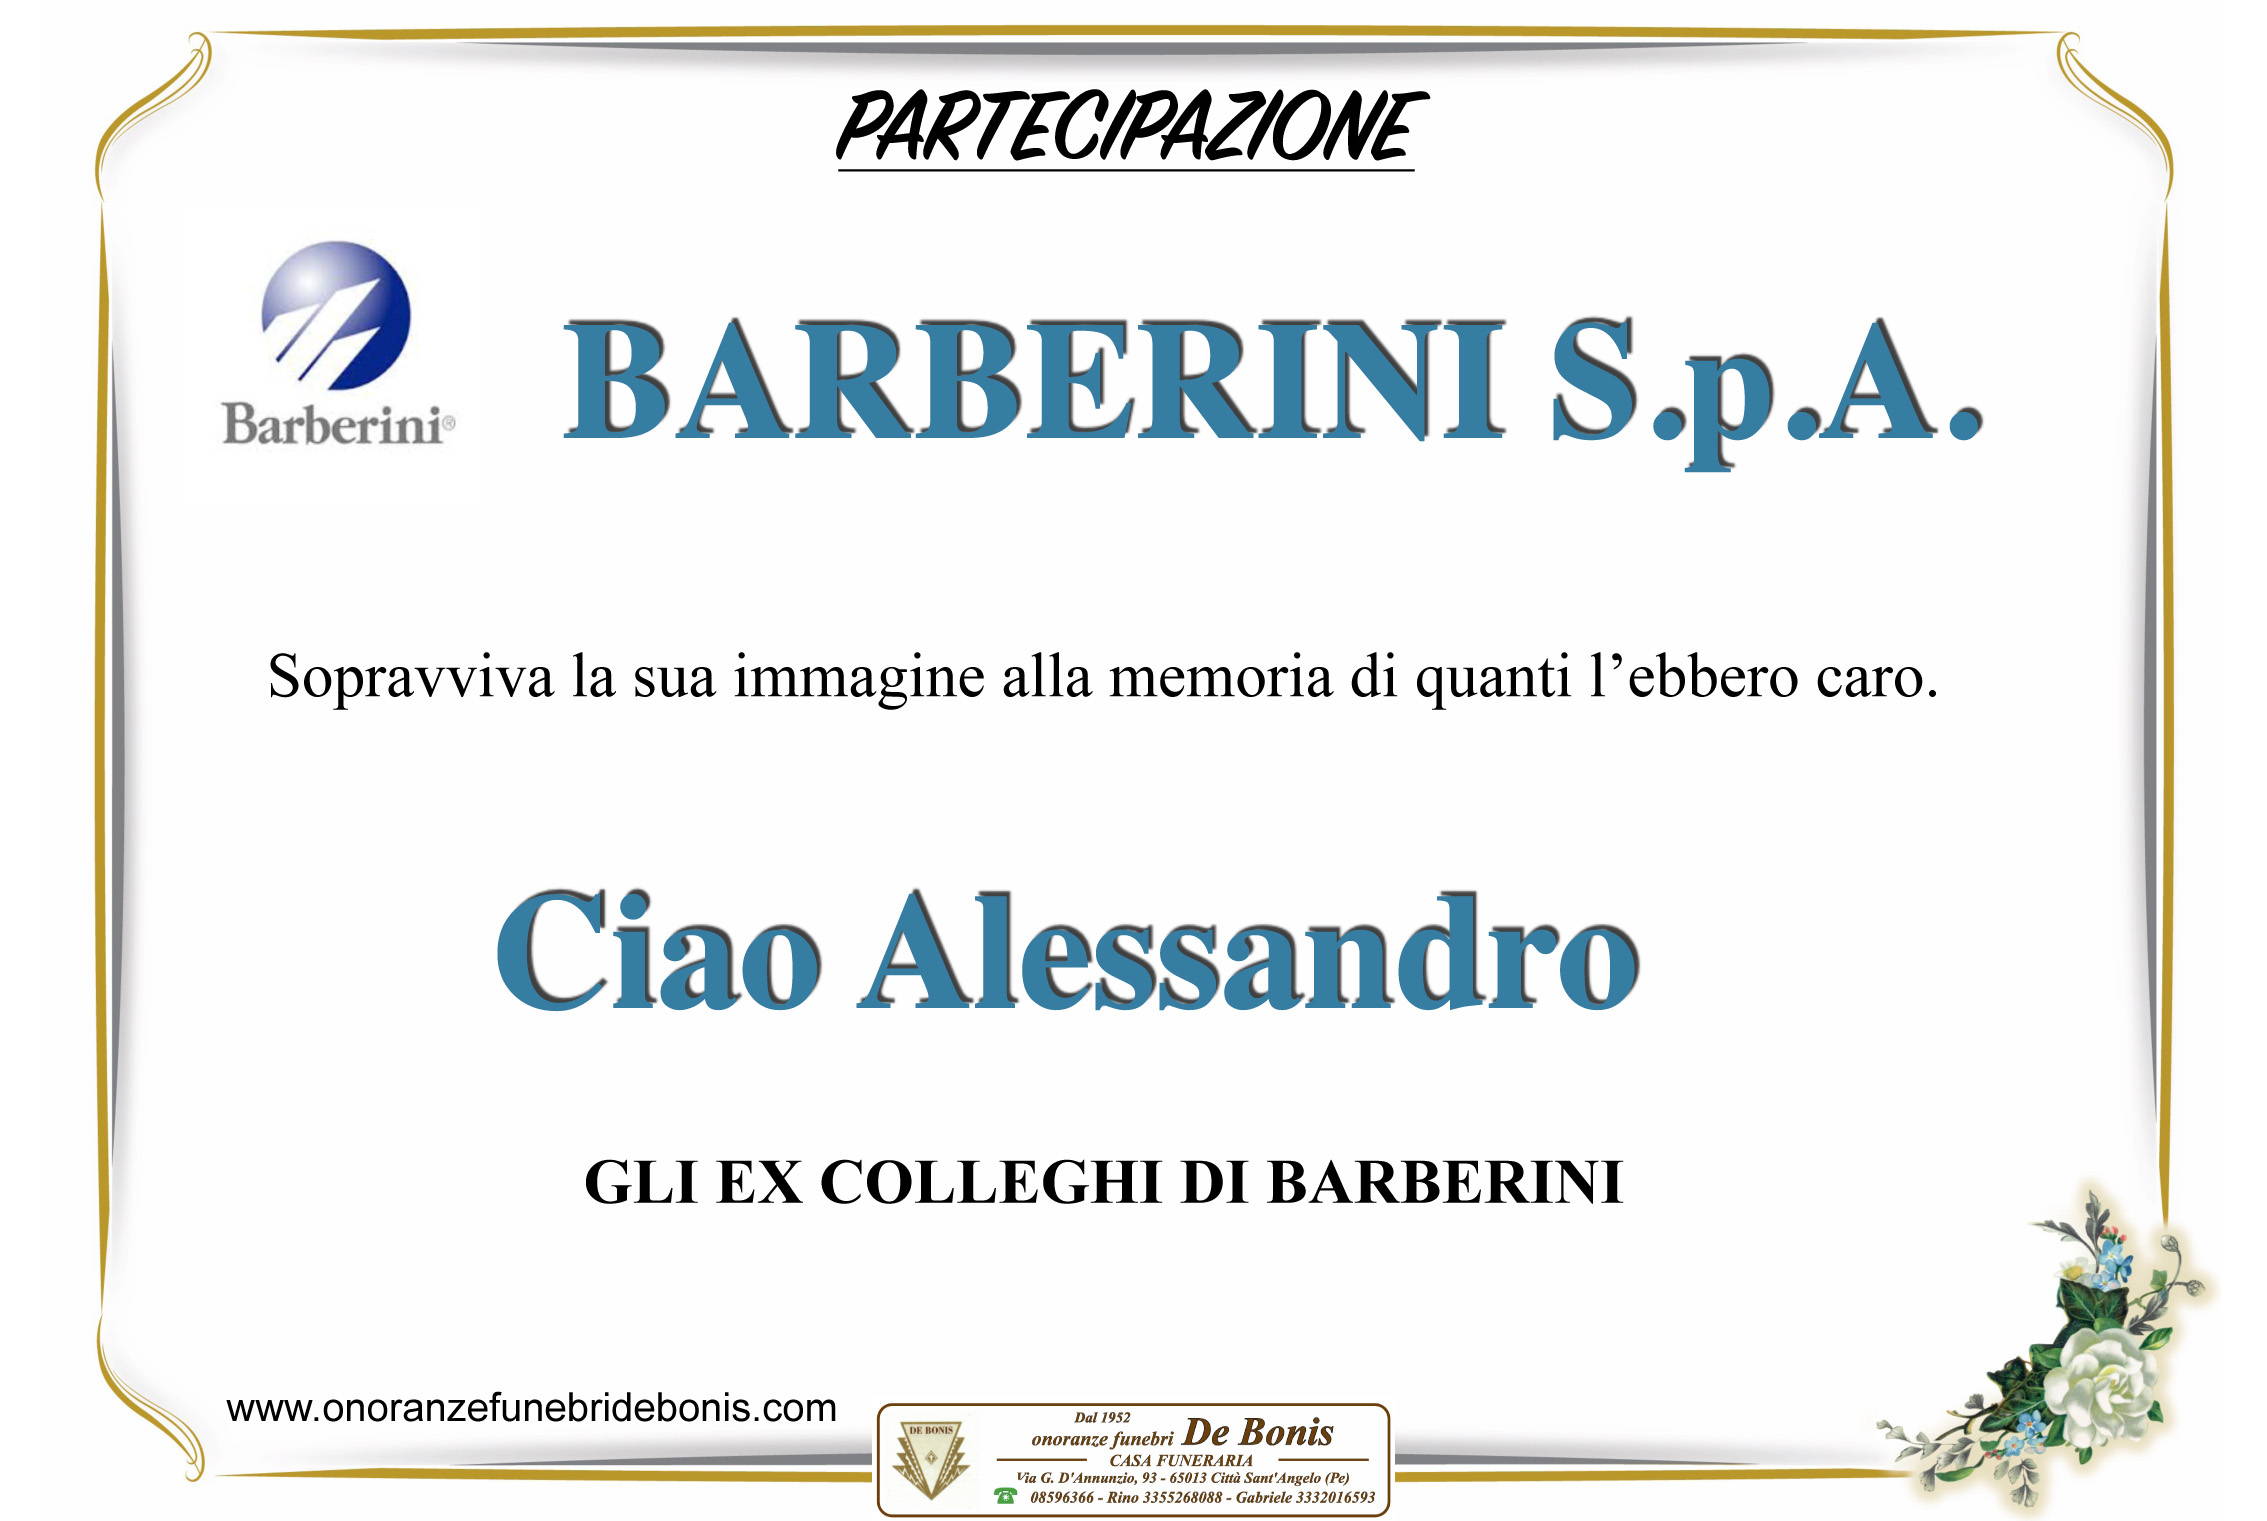 Barberini Spa - Gli ex colleghi